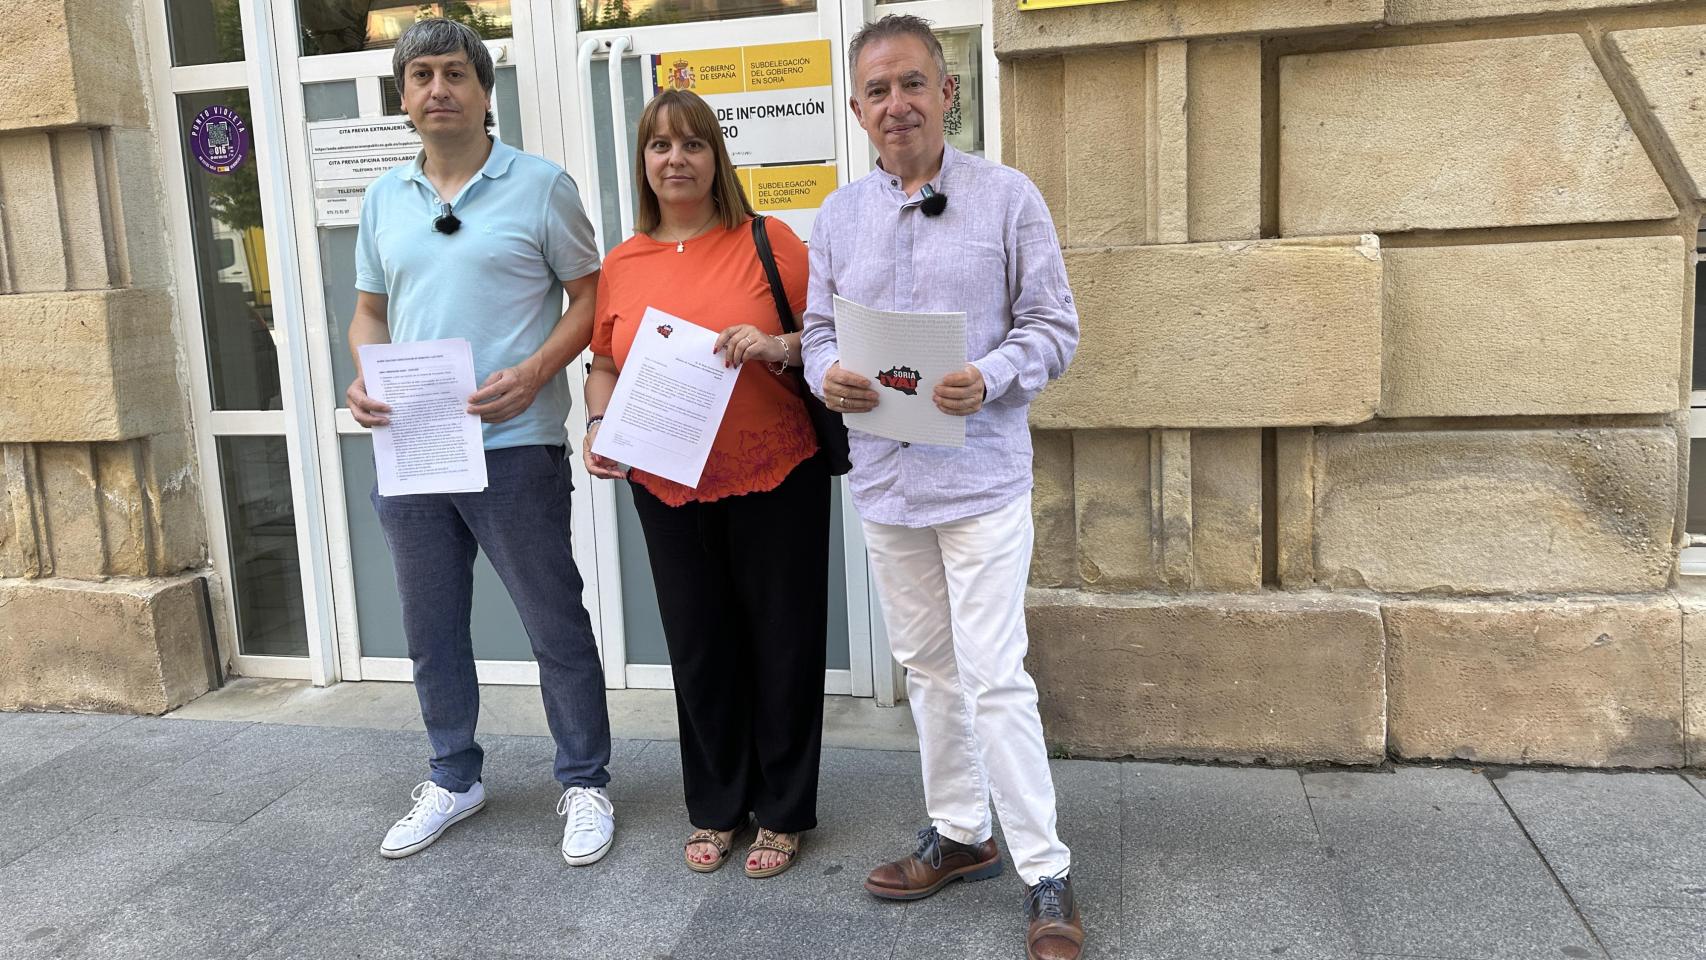 Ángel Ceña, Vanessa García y Juan Antonio Palomar, procuradores de Soria ¡YA!